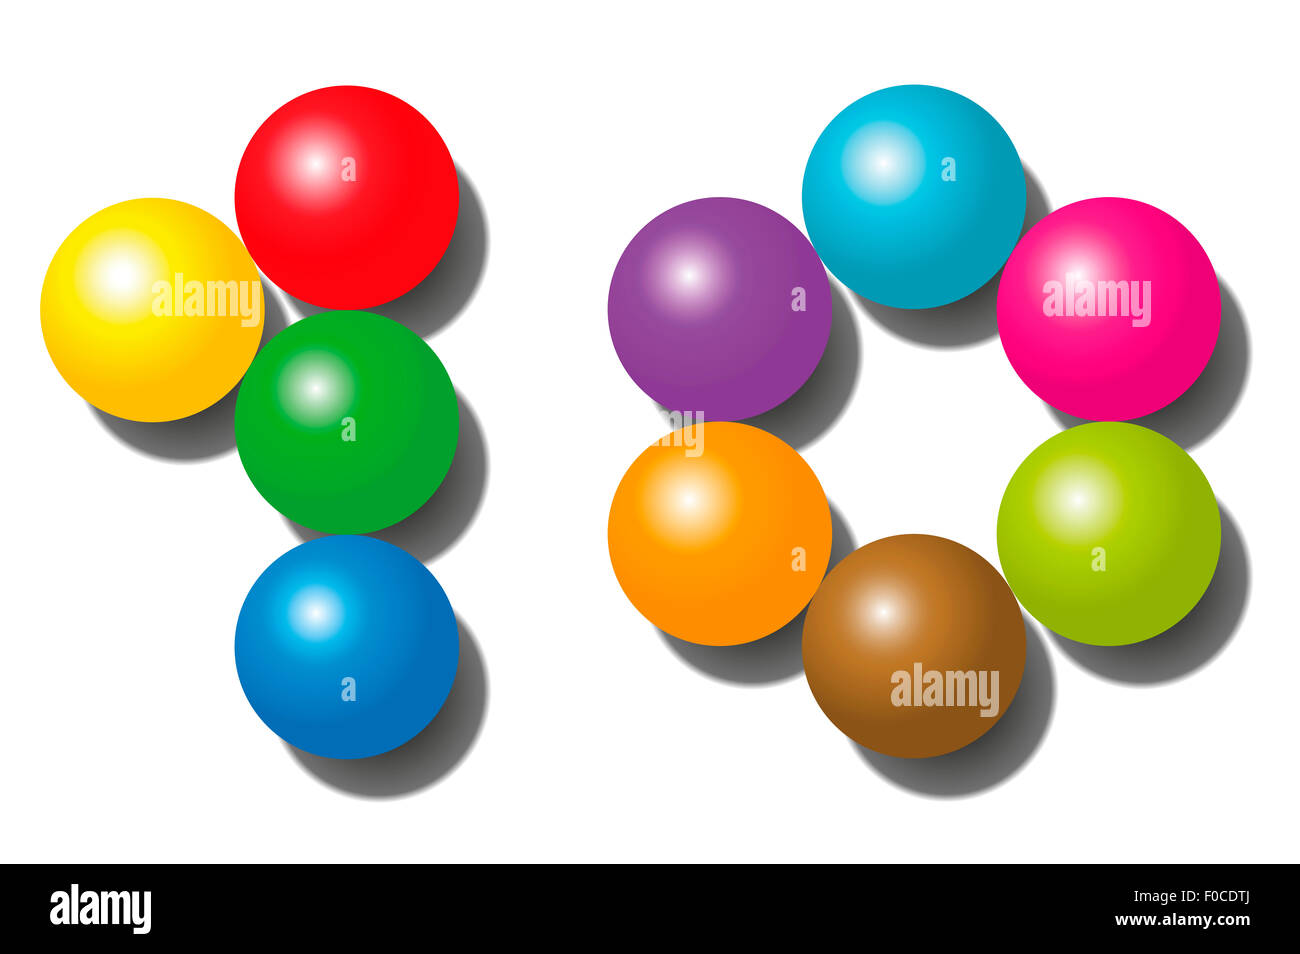 Dieci - composto da esattamente dieci sfere colorate - illustrazione su sfondo bianco. Foto Stock